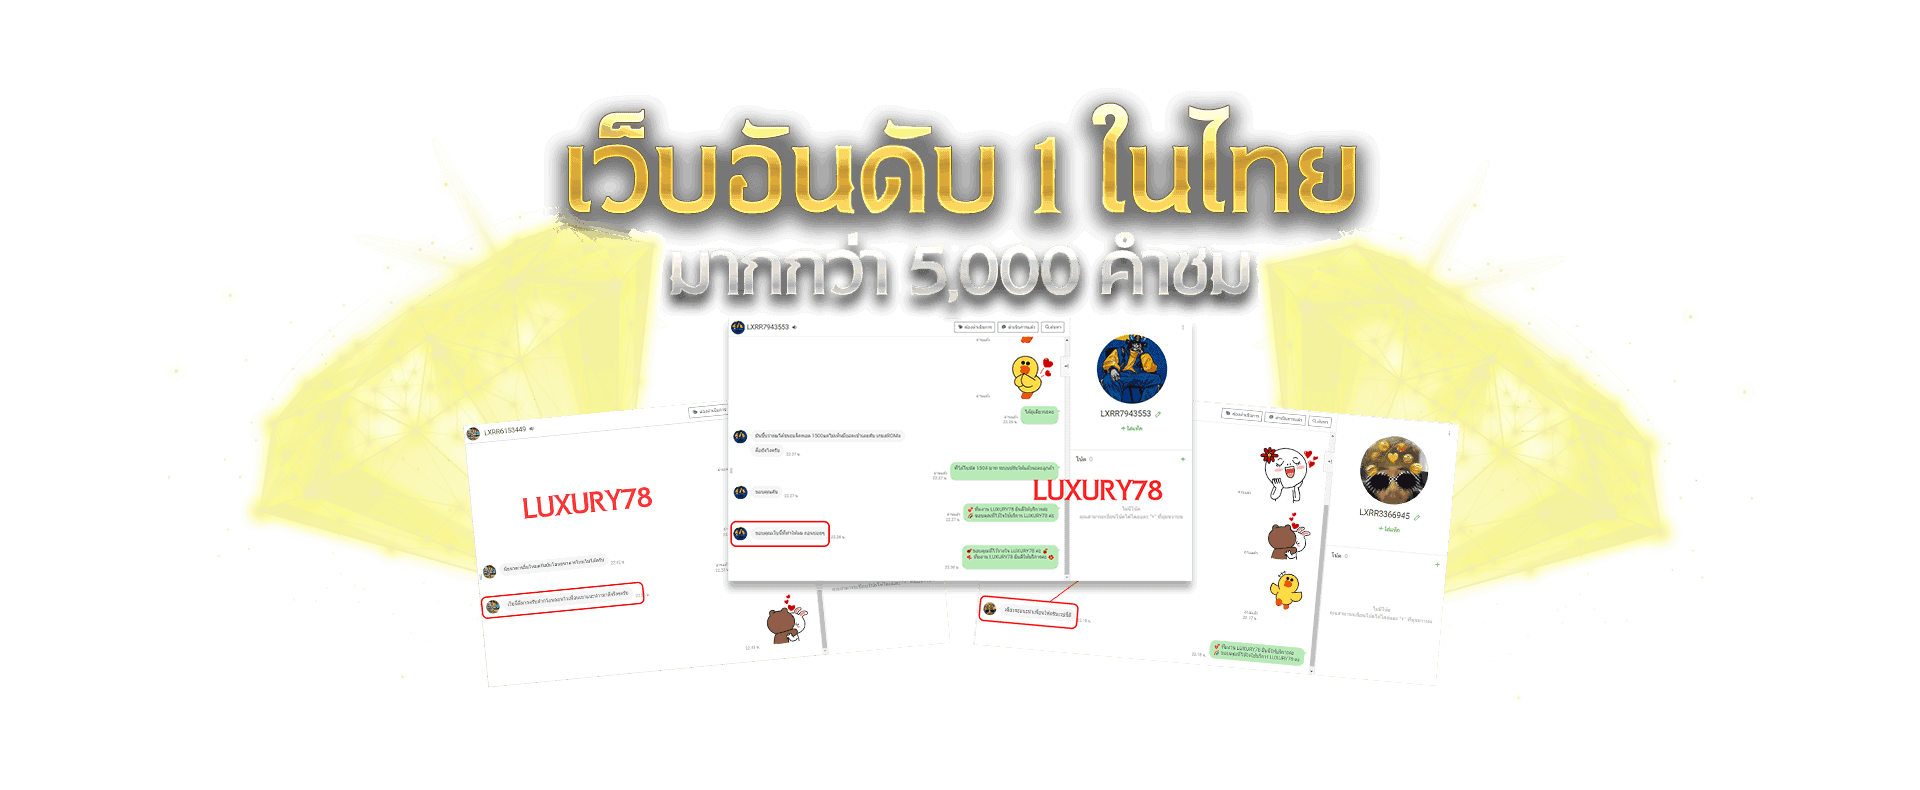 luxury78 การันตีจากผู้ใช้งานมากกว่า 500,000 คน ให้เป็นเว็บคาสิโนออนไลน์ที่ดีที่สุดของไทย